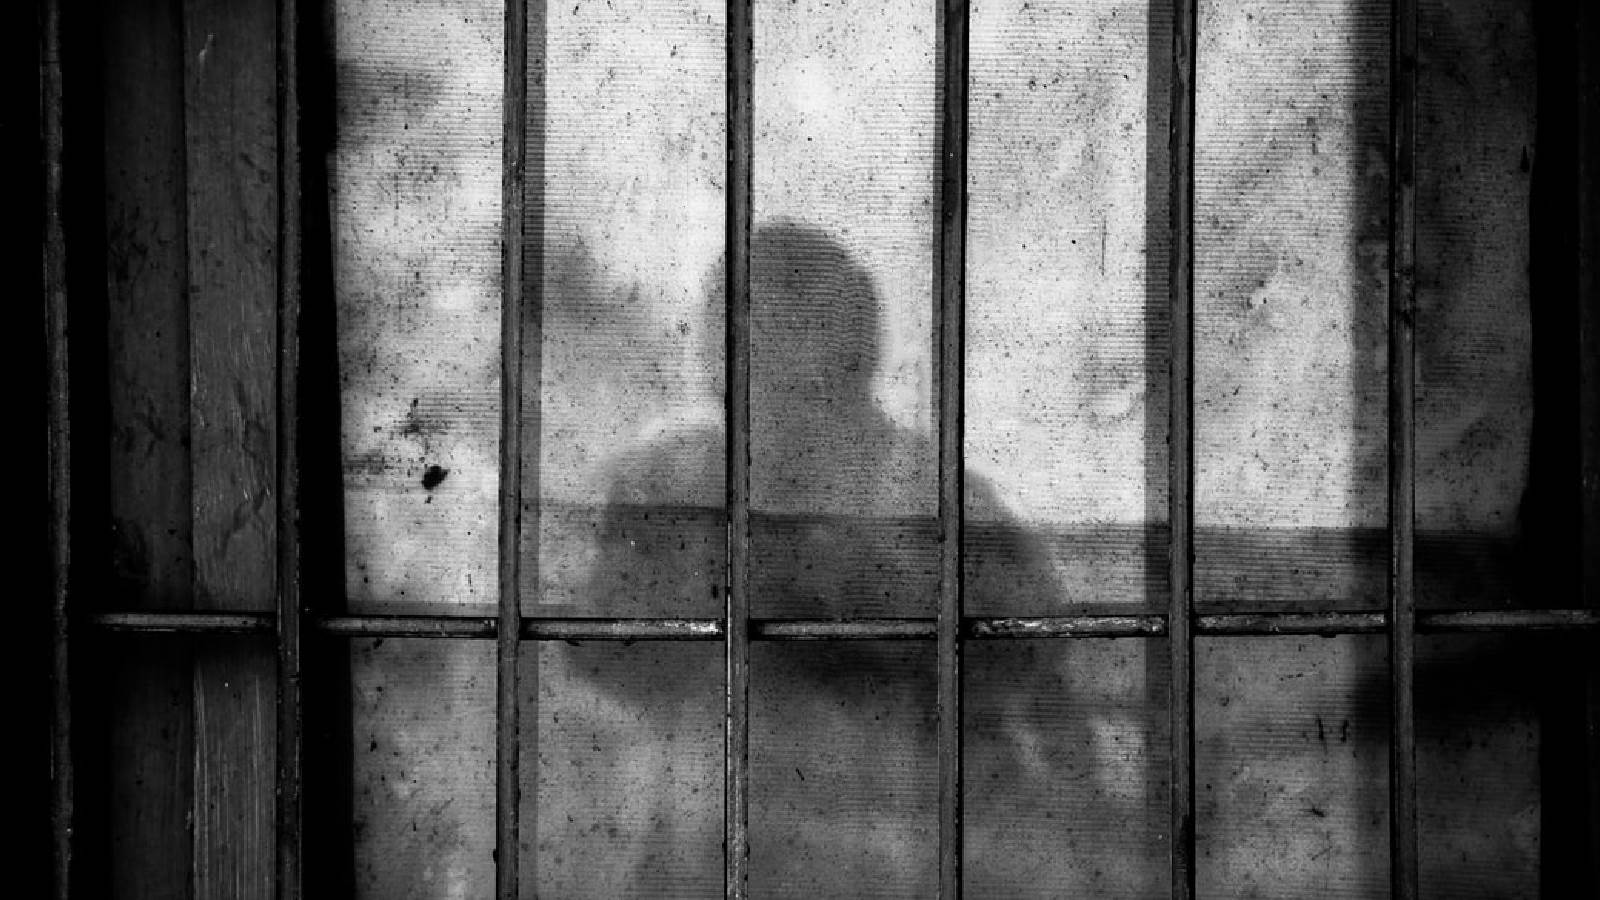  Zatvori u Srbiji - priče zatvorenika - uslovi u srpskim zatvorima 